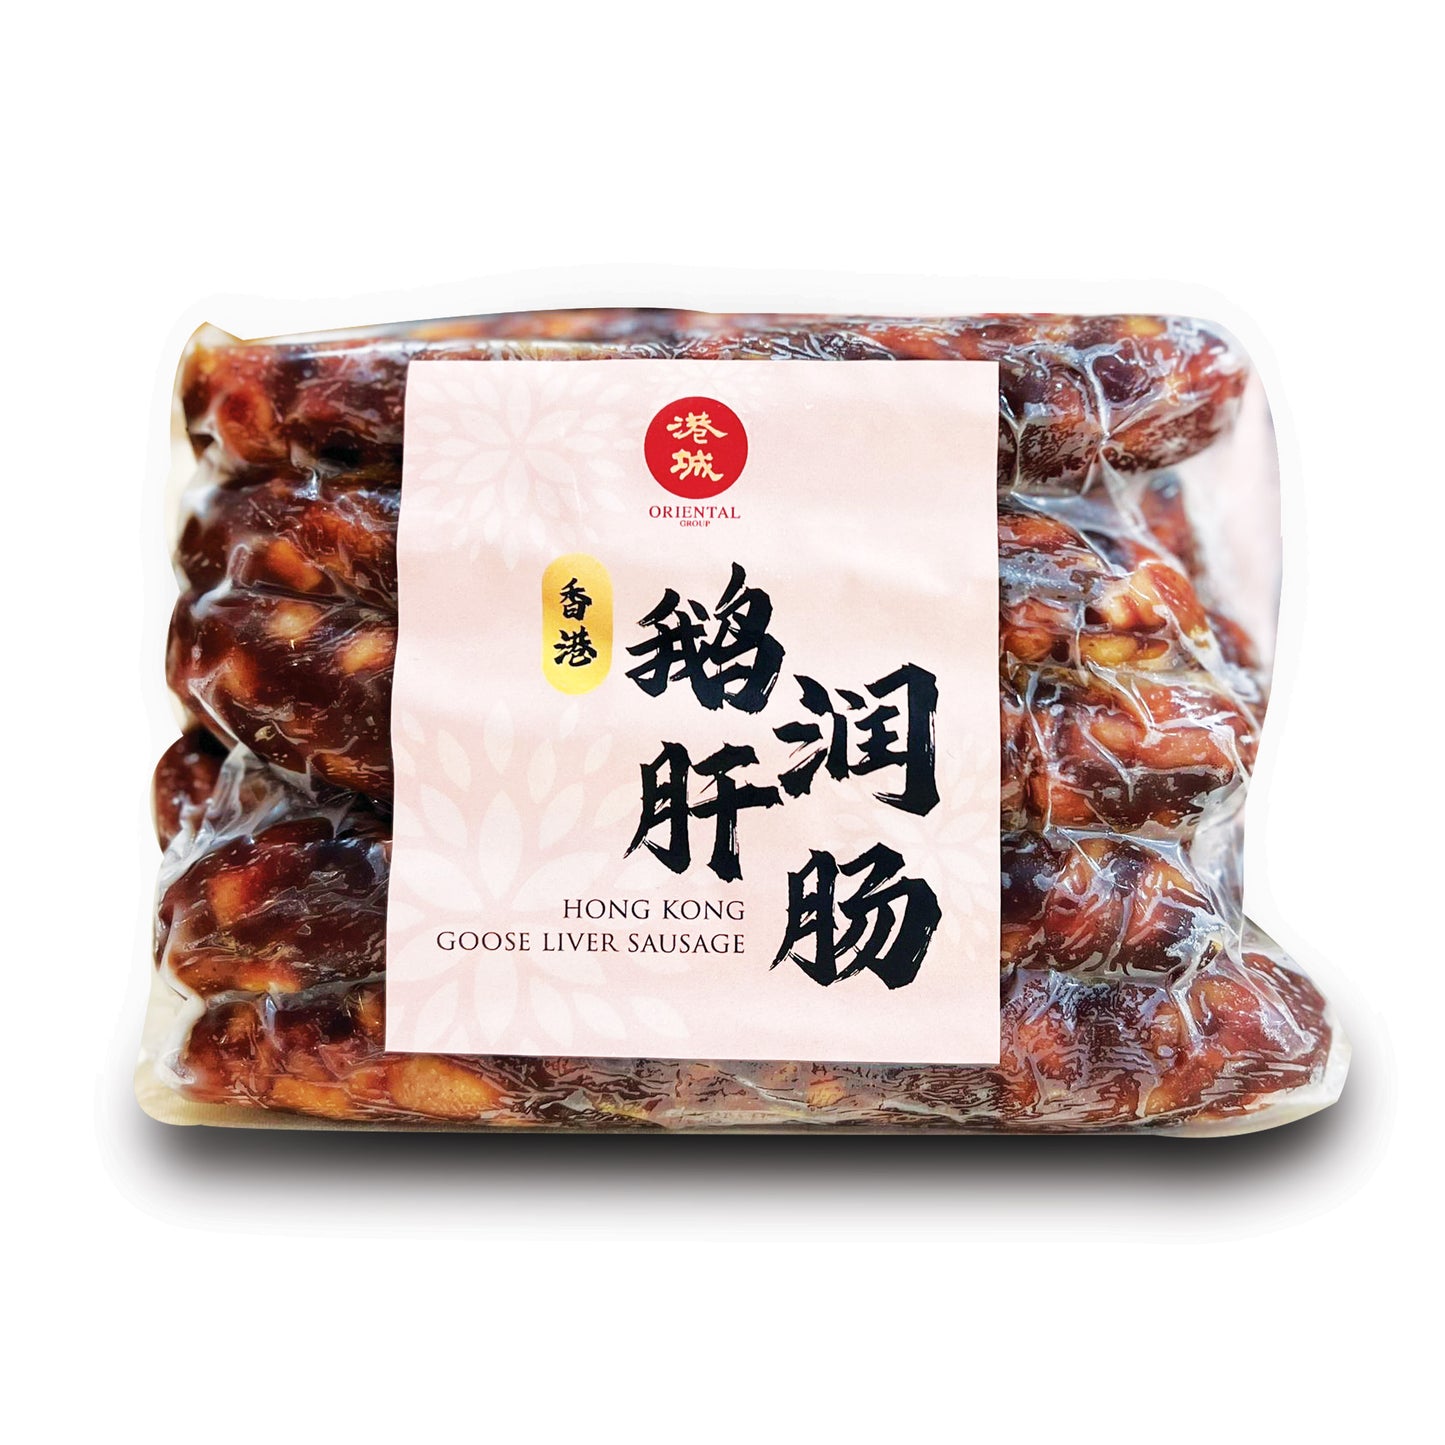 (Pork Free) - 香港鹅肝润肠 Hong Kong Goose Liver Sausage (5 pairs)